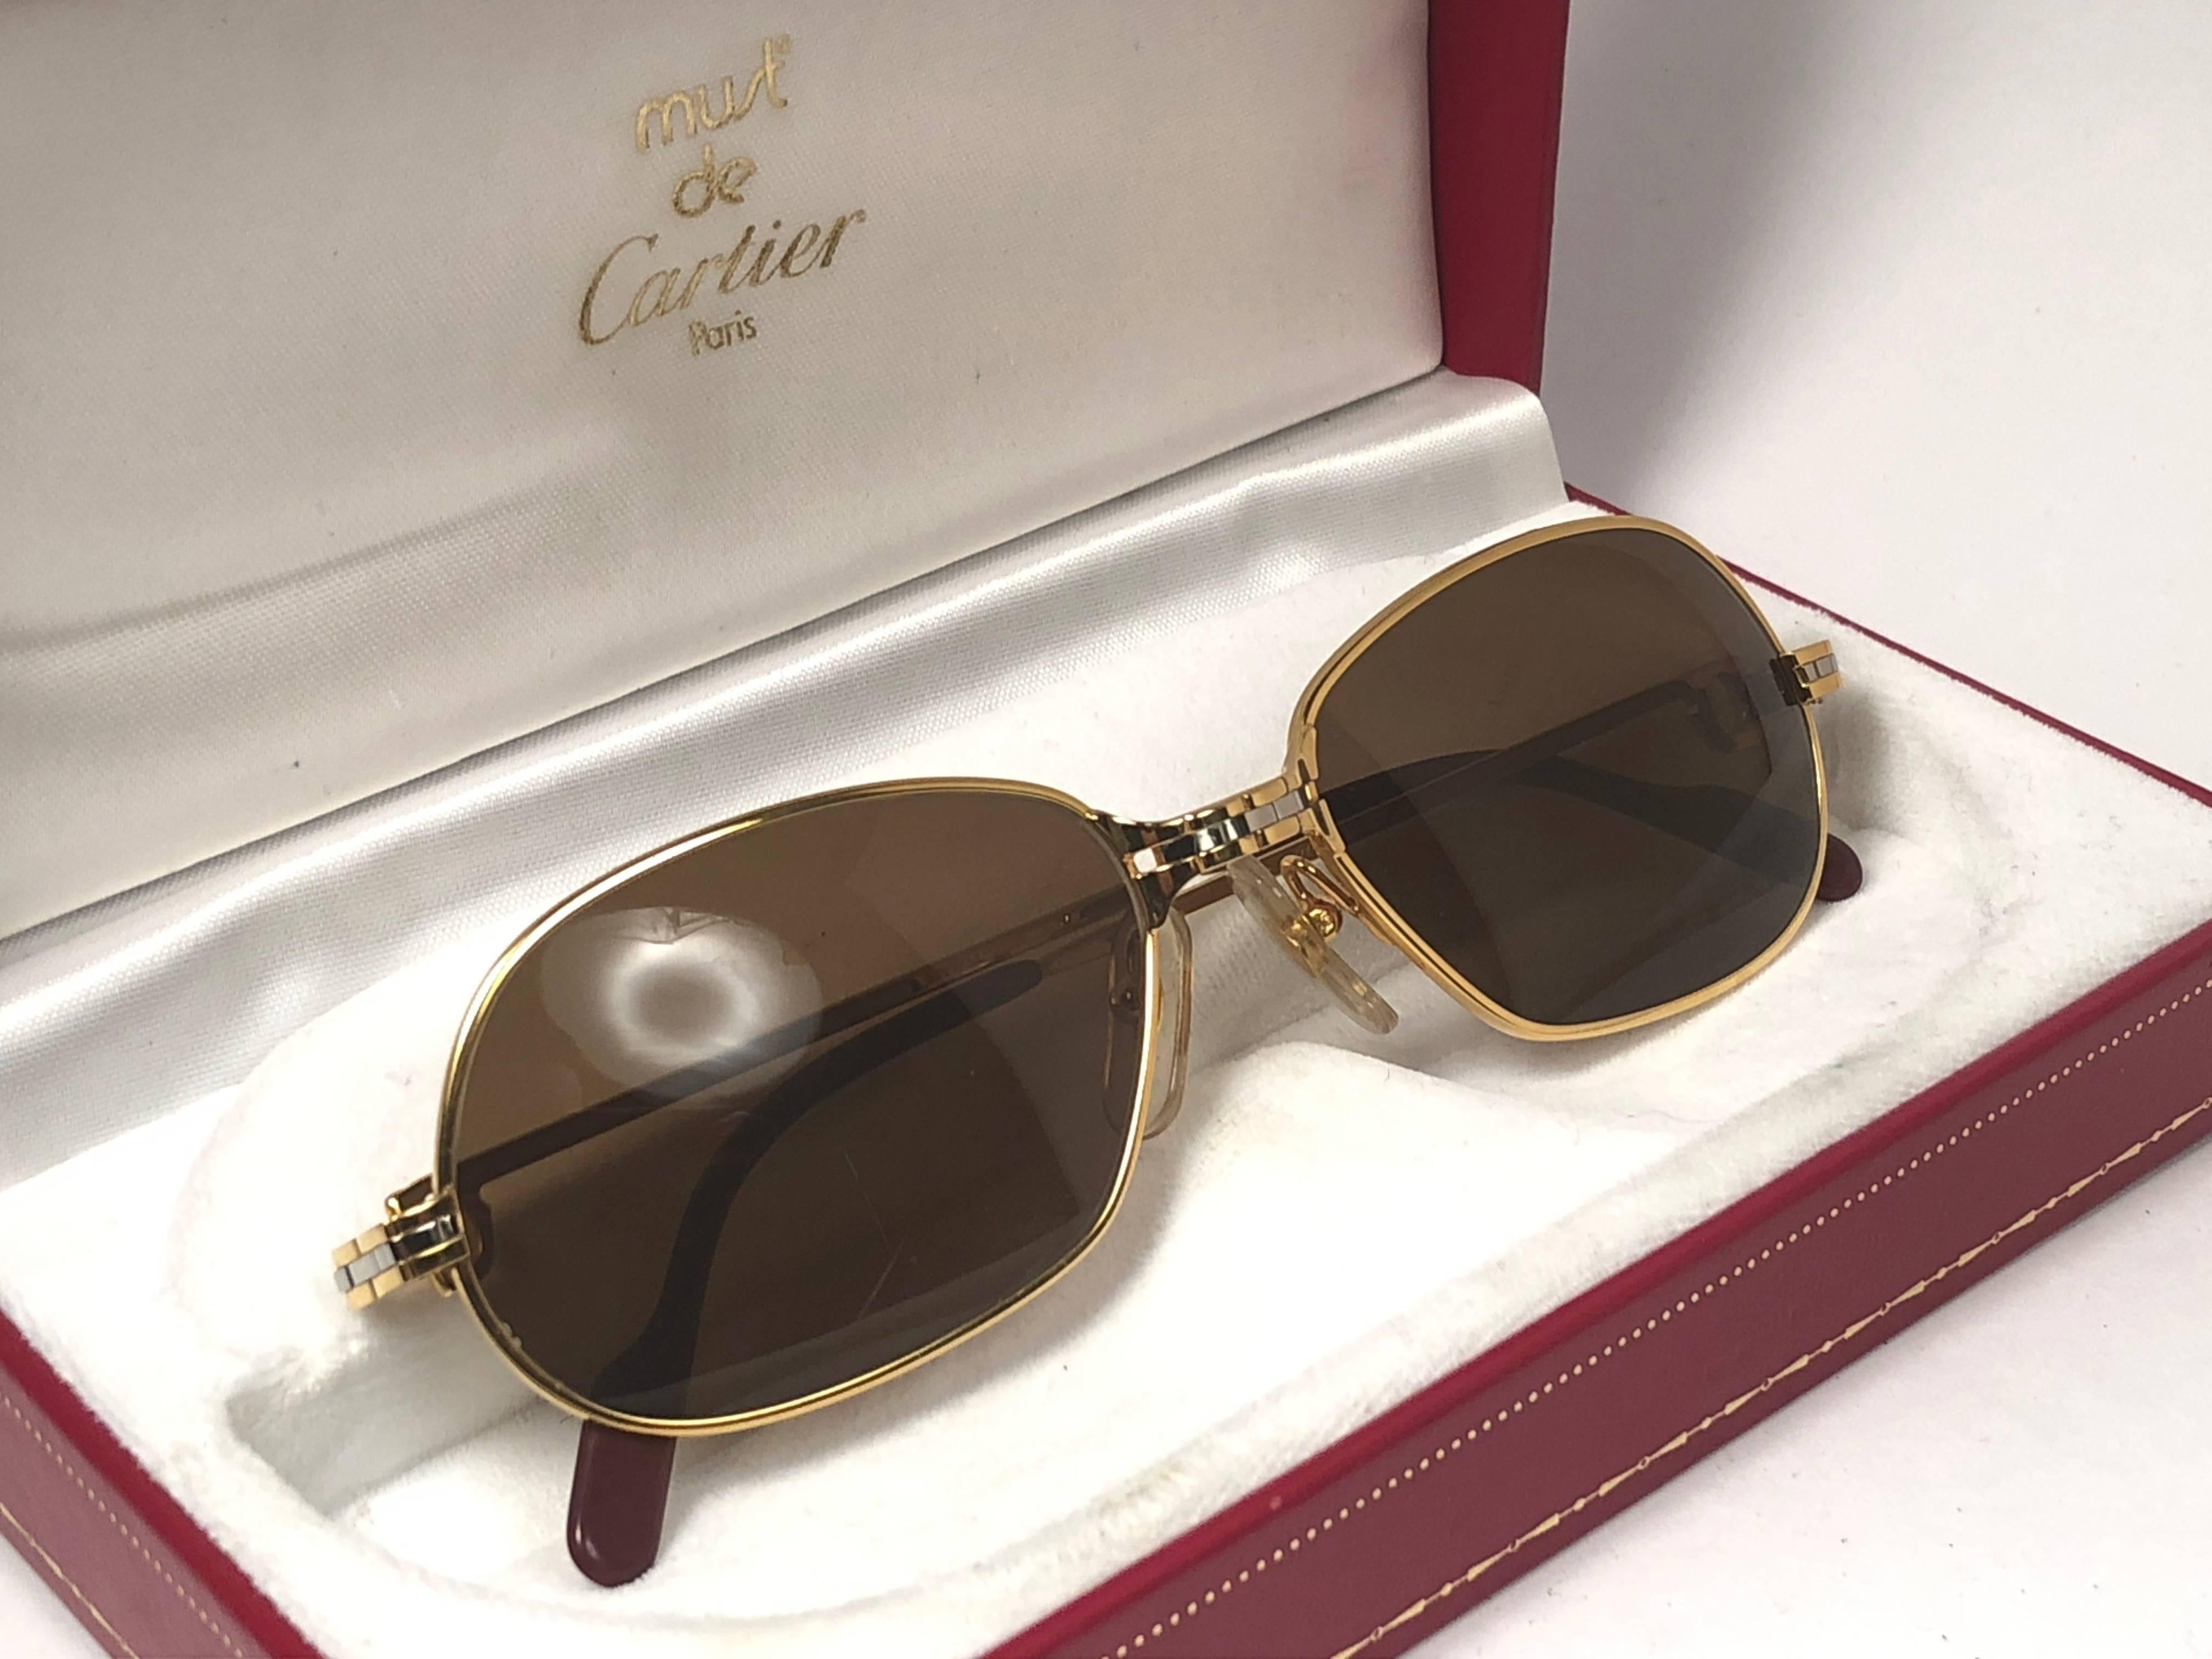 Neu 1988 Cartier Panthere GM Sonnenbrille mit massivem braun  (UV-Schutz) Linsen.  Der Rahmen ist mit der Vorderseite und den Seiten in Gelb- und Weißgold. Alle Punzierungen. burgunderfarbene Ohrpolster. 
Beide Arme tragen das C von Cartier auf der